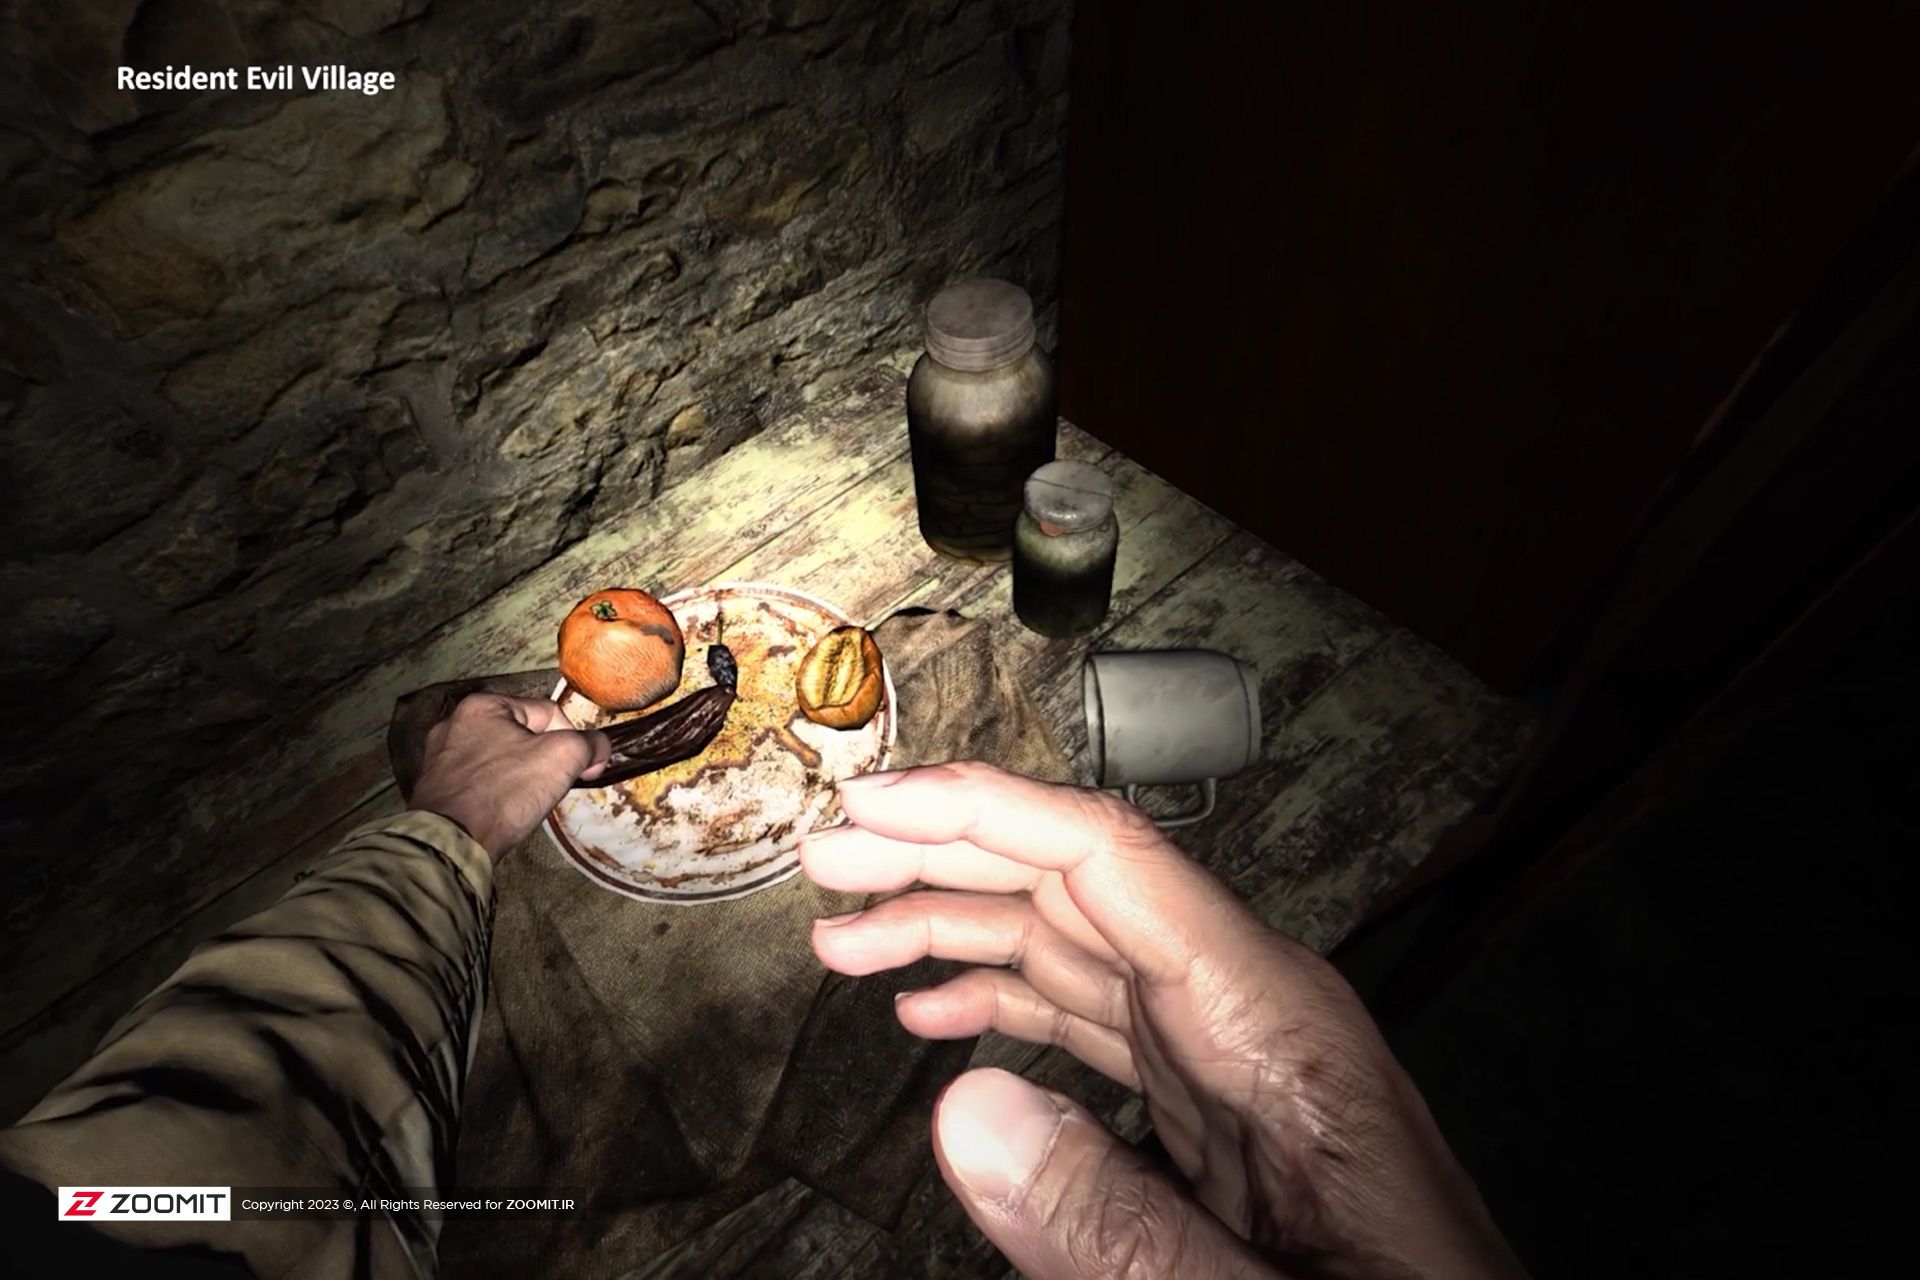 نمایی از غذاهای گندیده در بازی واقعیت مجازی رزیدنت ایول ویلج